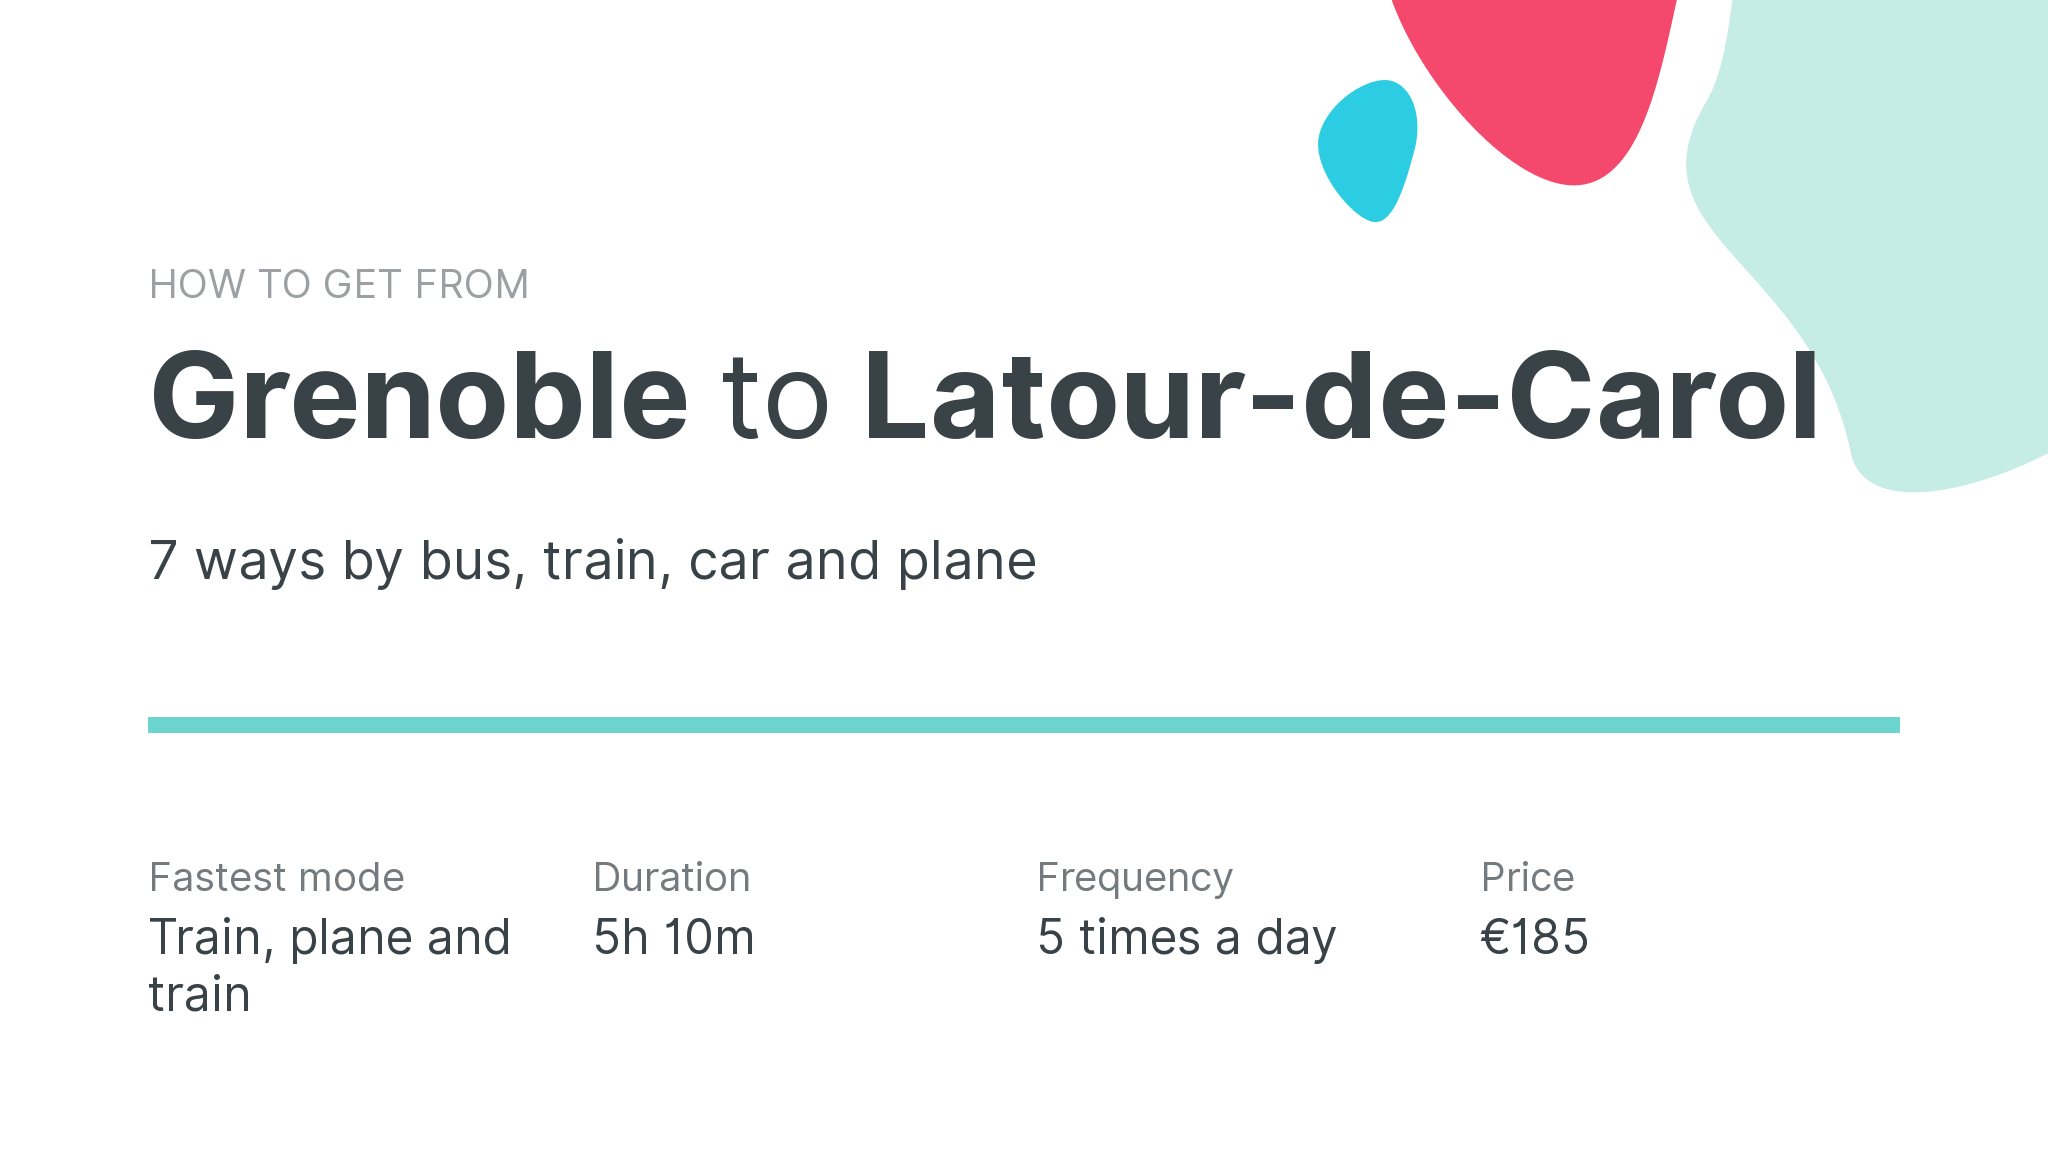 How do I get from Grenoble to Latour-de-Carol